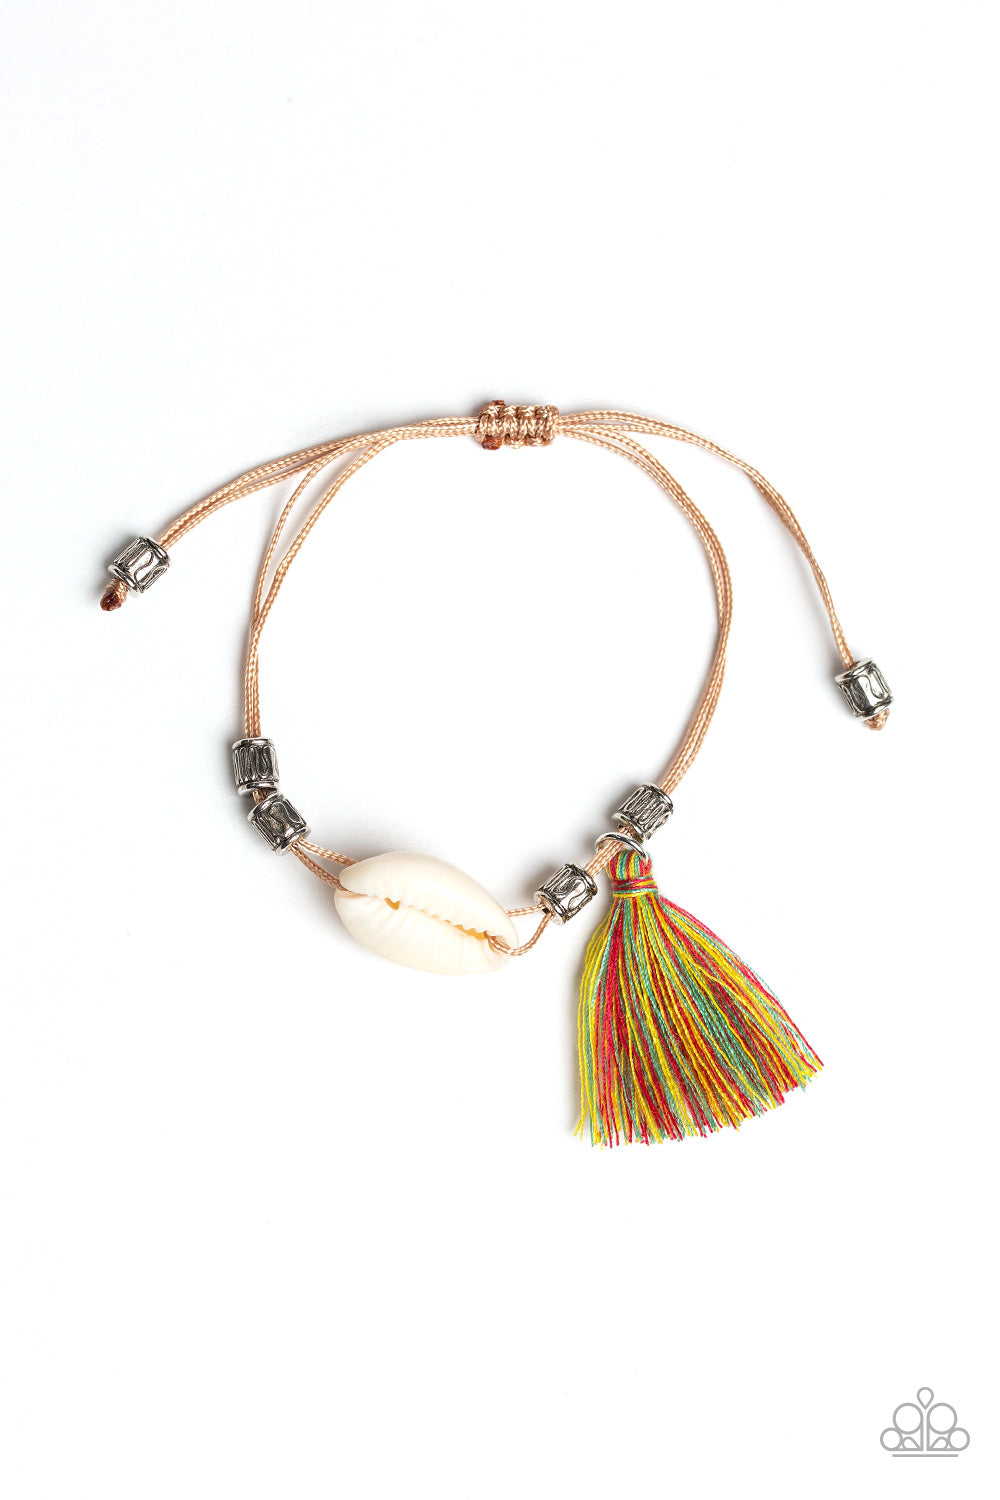 SEA If I Care - Multi-Colored Urban Bracelet - Susan's Jewelry Shop